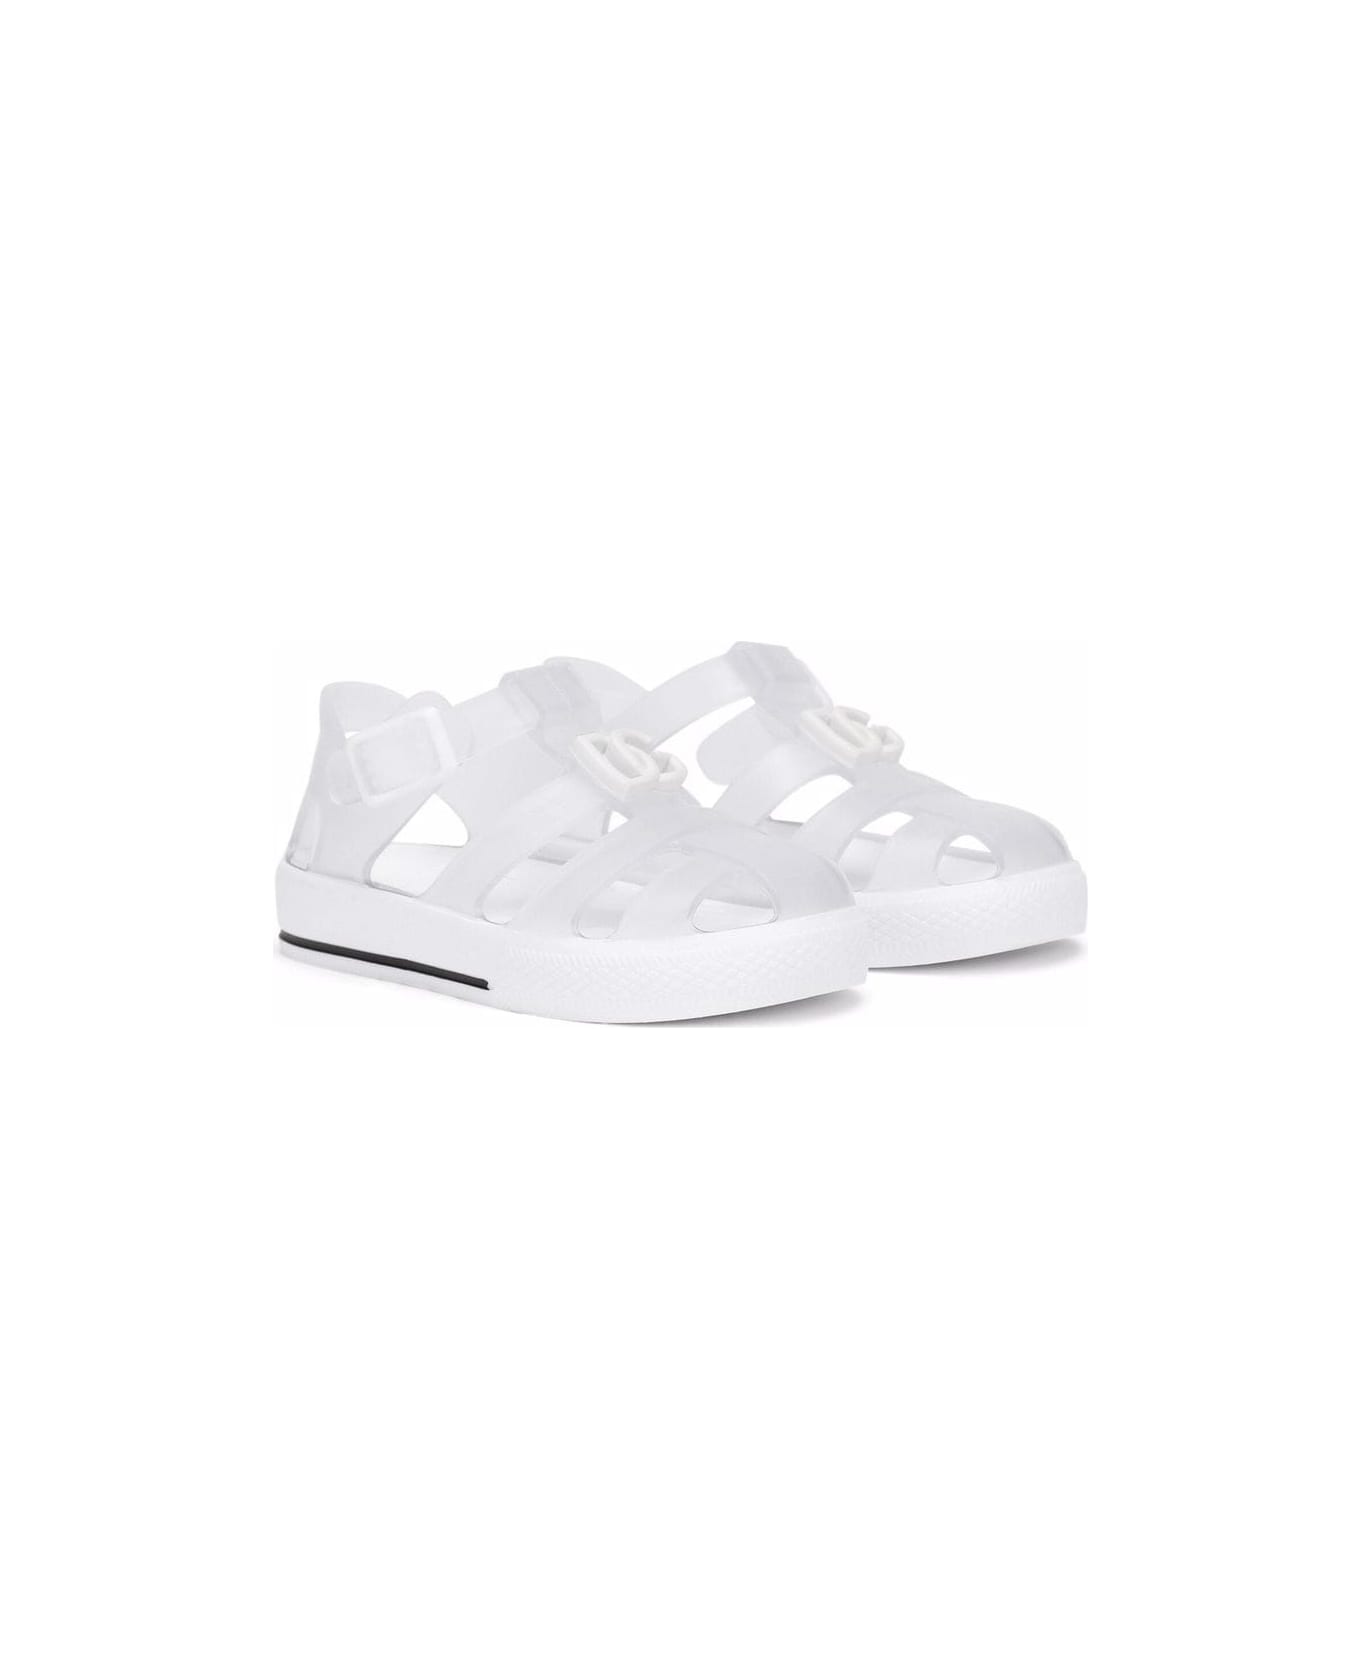 Dolce & Gabbana White Rubber Sandals - White シューズ